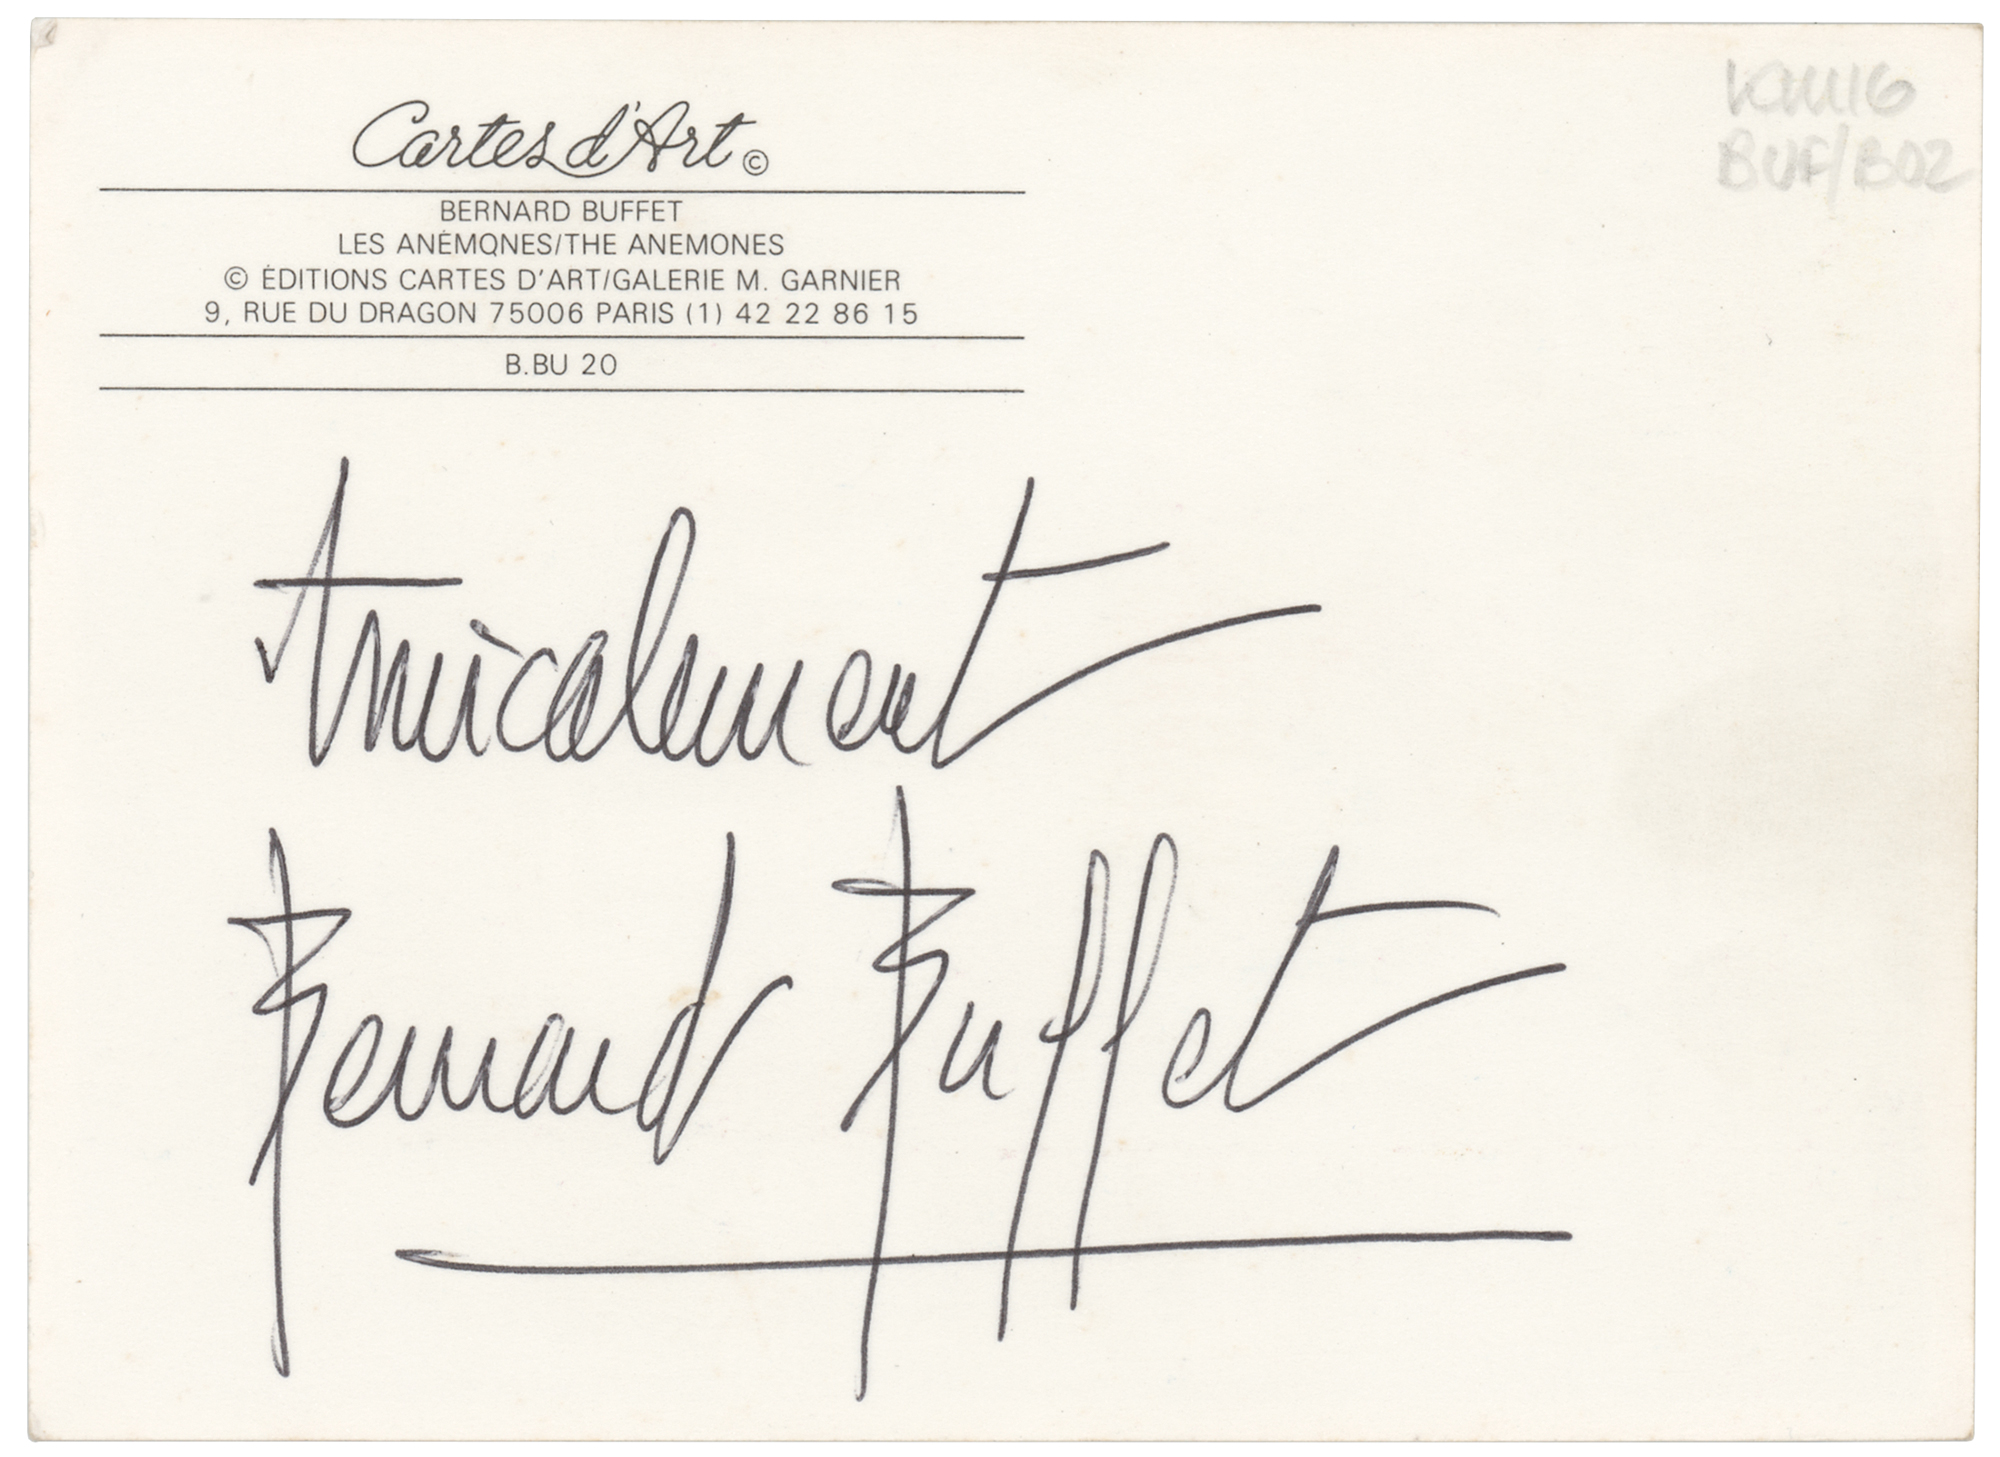 Bernard Buffet Signed Postcard | Sold for $250 | RR Auction